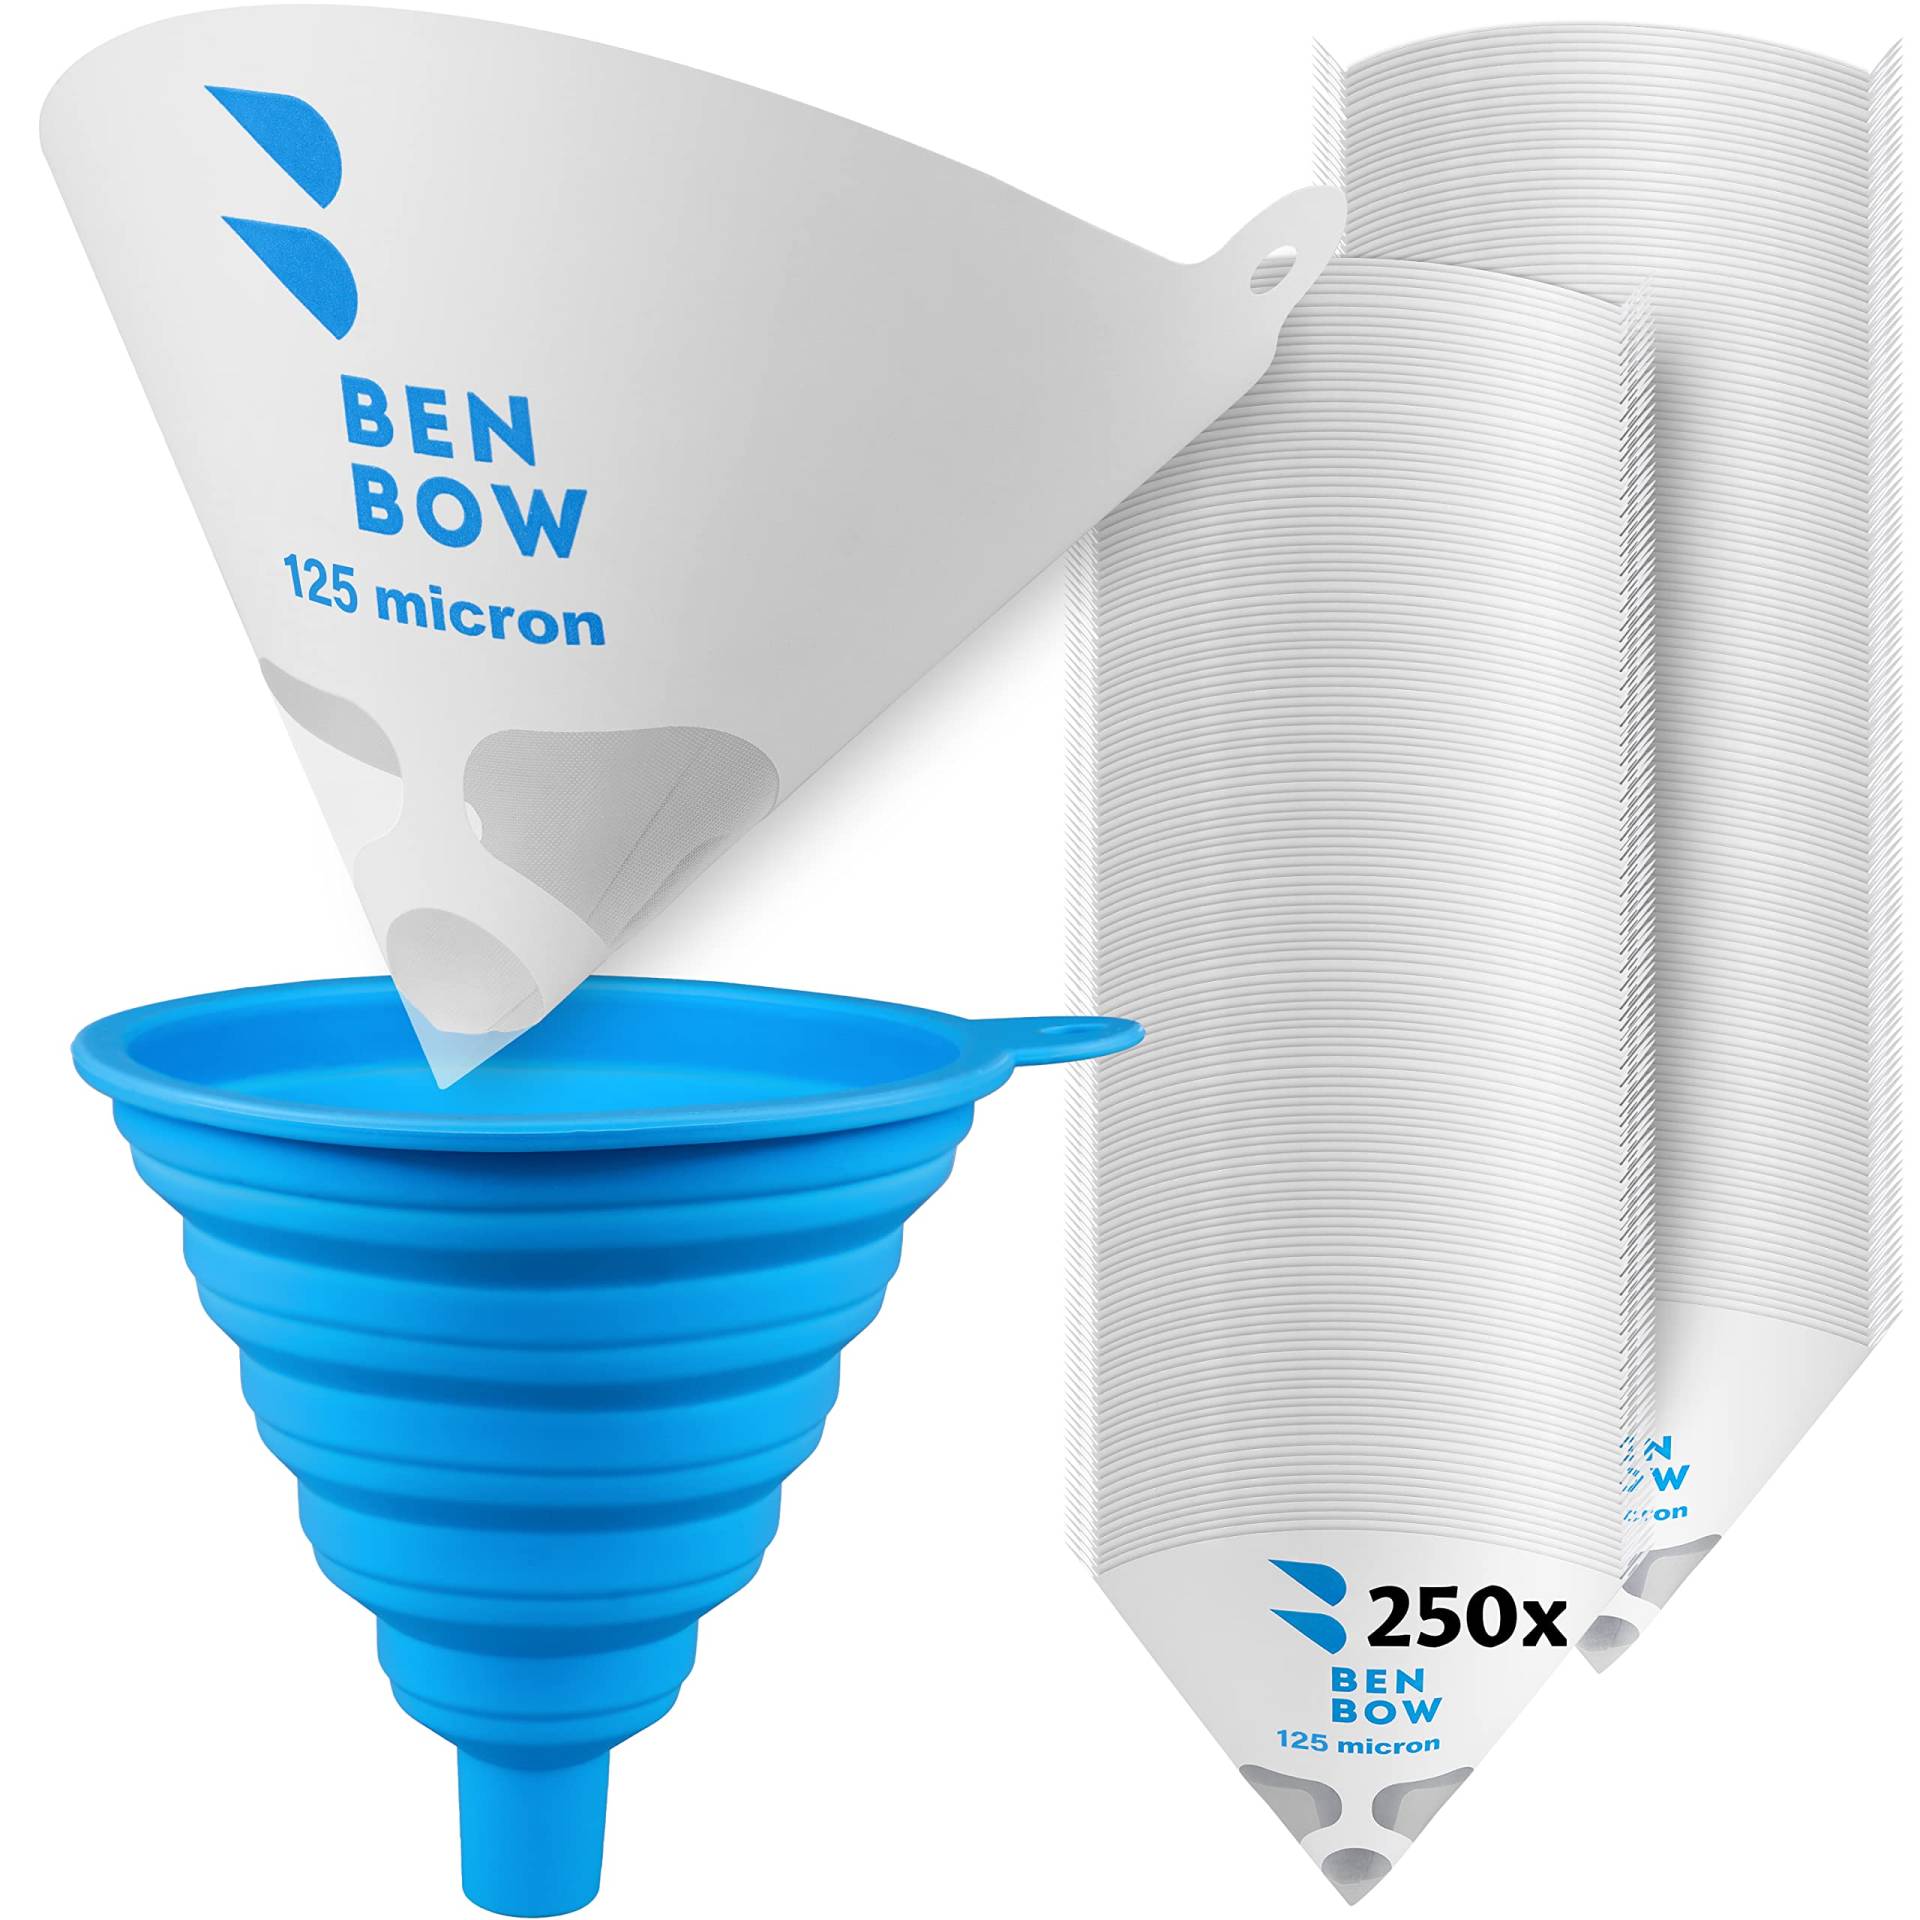 BenBow Lacksieb 125µ x 250 Stück - Einweg-Papierfilter mit Nylongewebe und praktischer Silikontrichter - zum Filtern von Lacken und Farben vor Verunreinigungen von BenBow